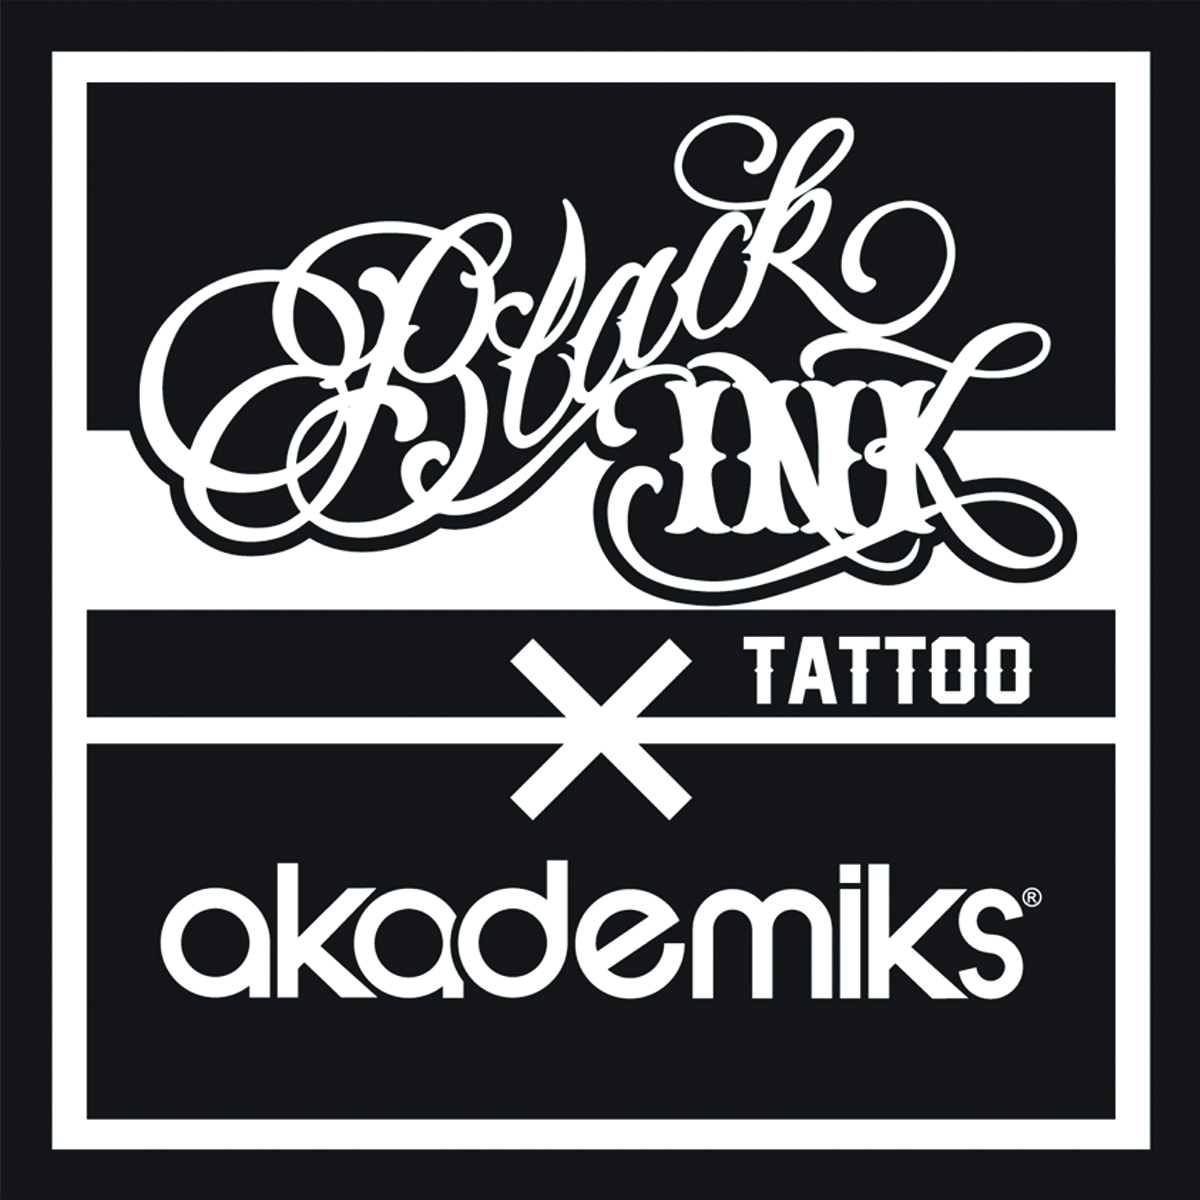 dutchess black ink tattoo shop